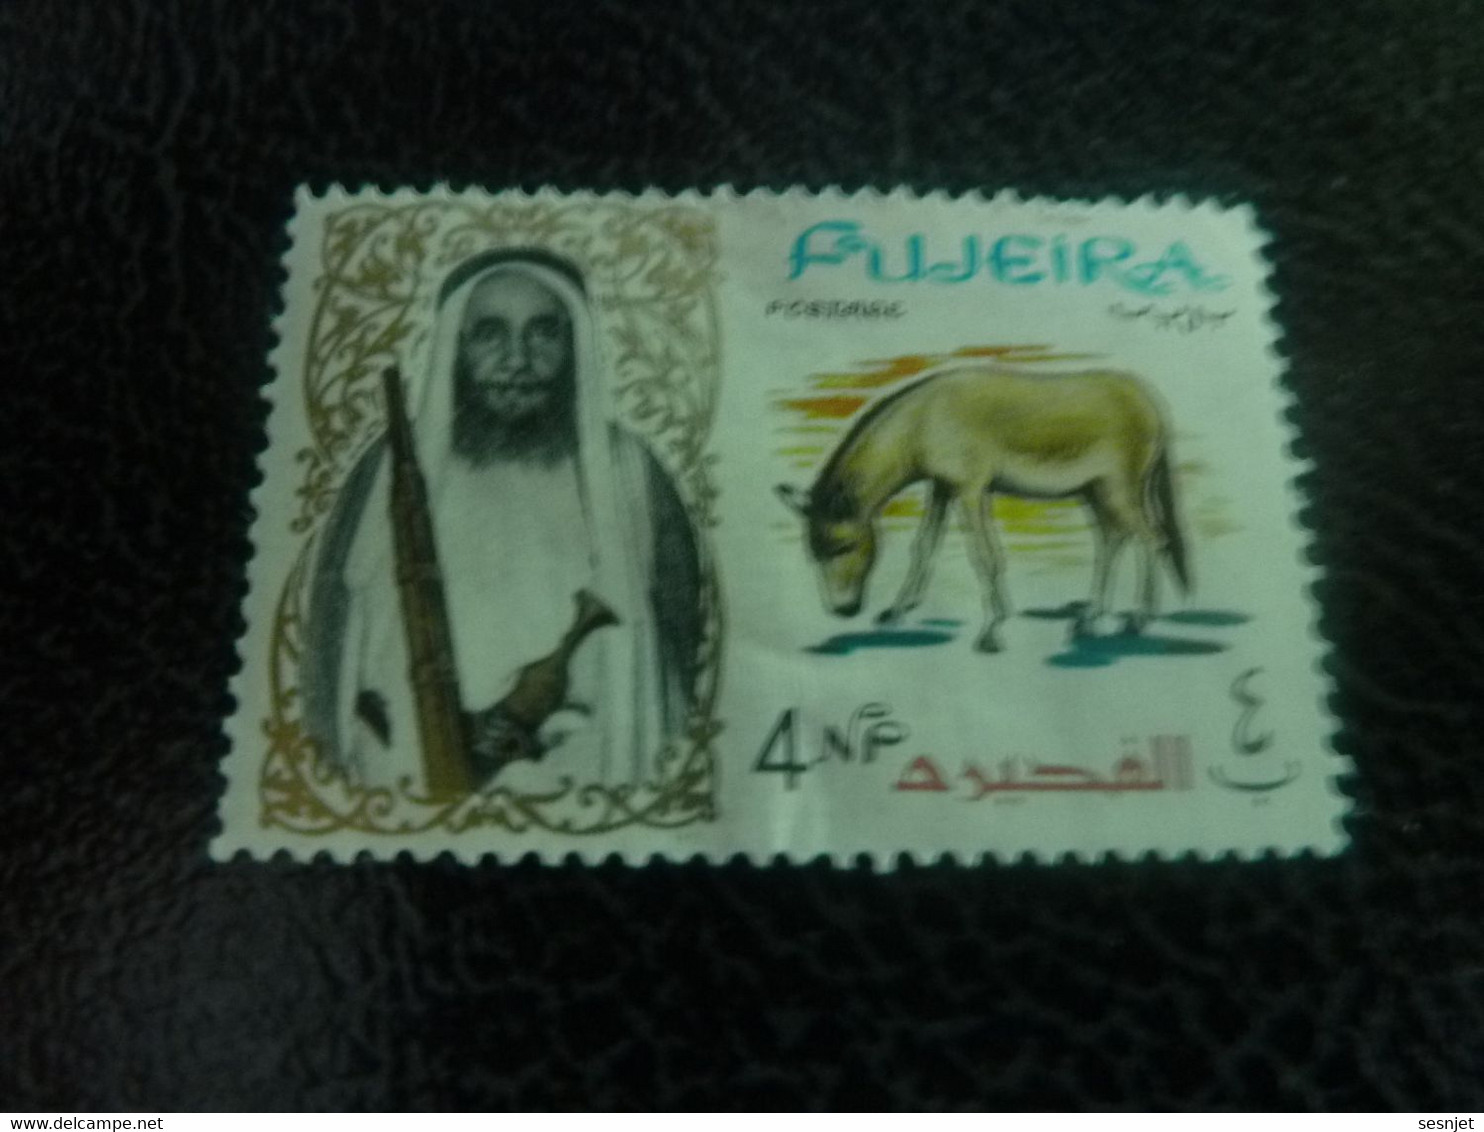 Fujeira - Sultan - Mule - Val 4 Np - Postage - Multicolore - Non Oblitéré - Année 1965 - - Anes